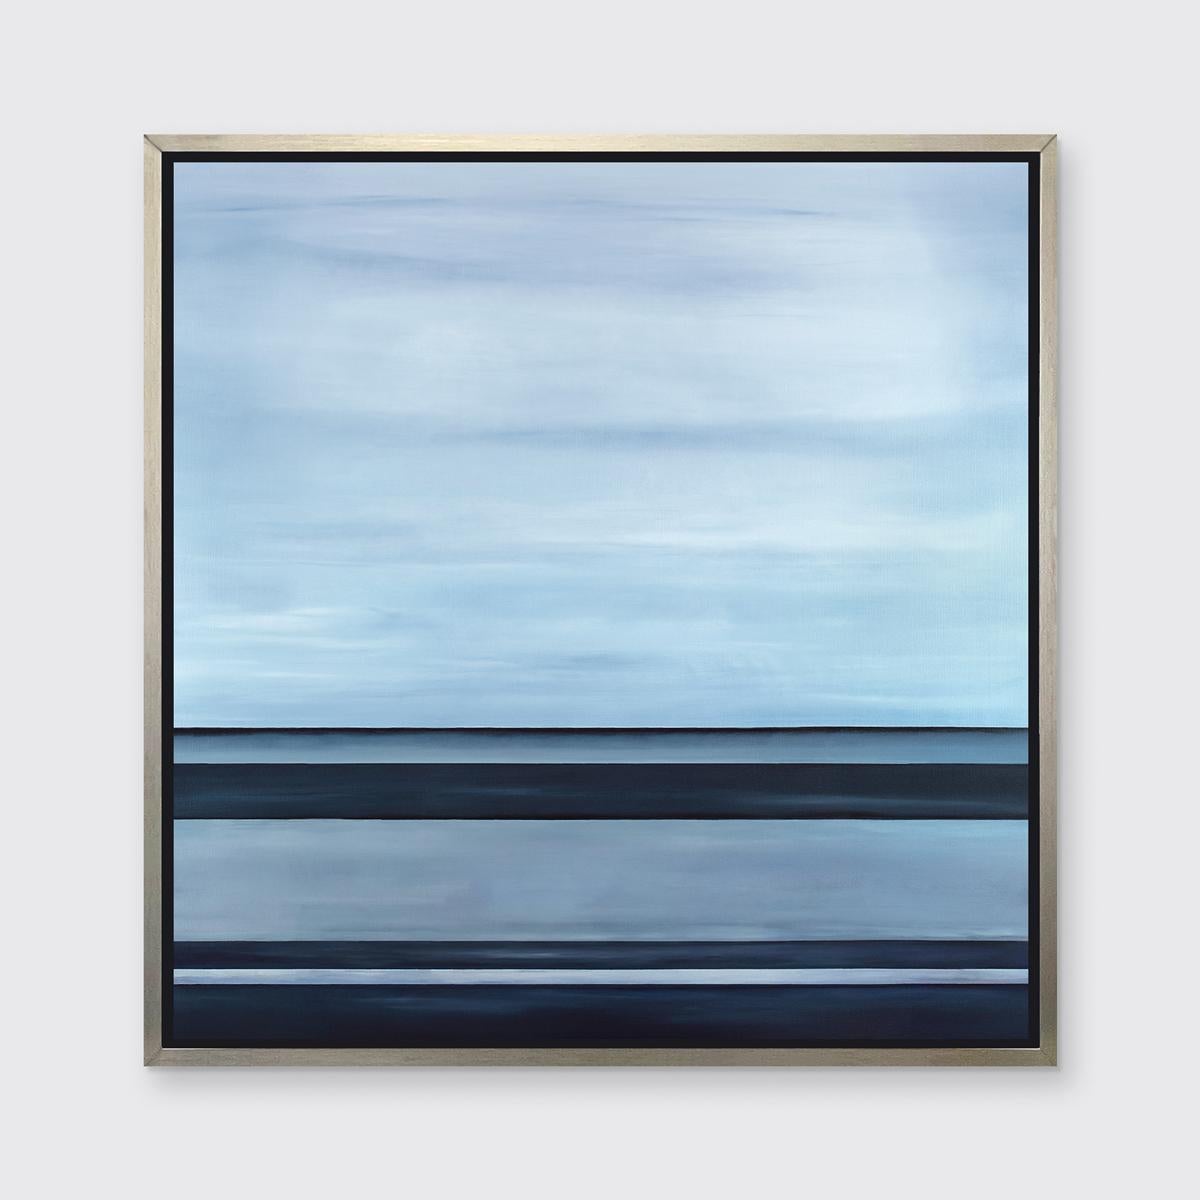 Dieses abstrakte Landschaftsbild in limitierter Auflage von Tony Iadicicco zeigt eine blaue und graue Farbpalette. Die Künstlerin kombiniert weiche Farbmischungen mit strengen horizontalen Linien, die eine Landschaftskomposition und eine